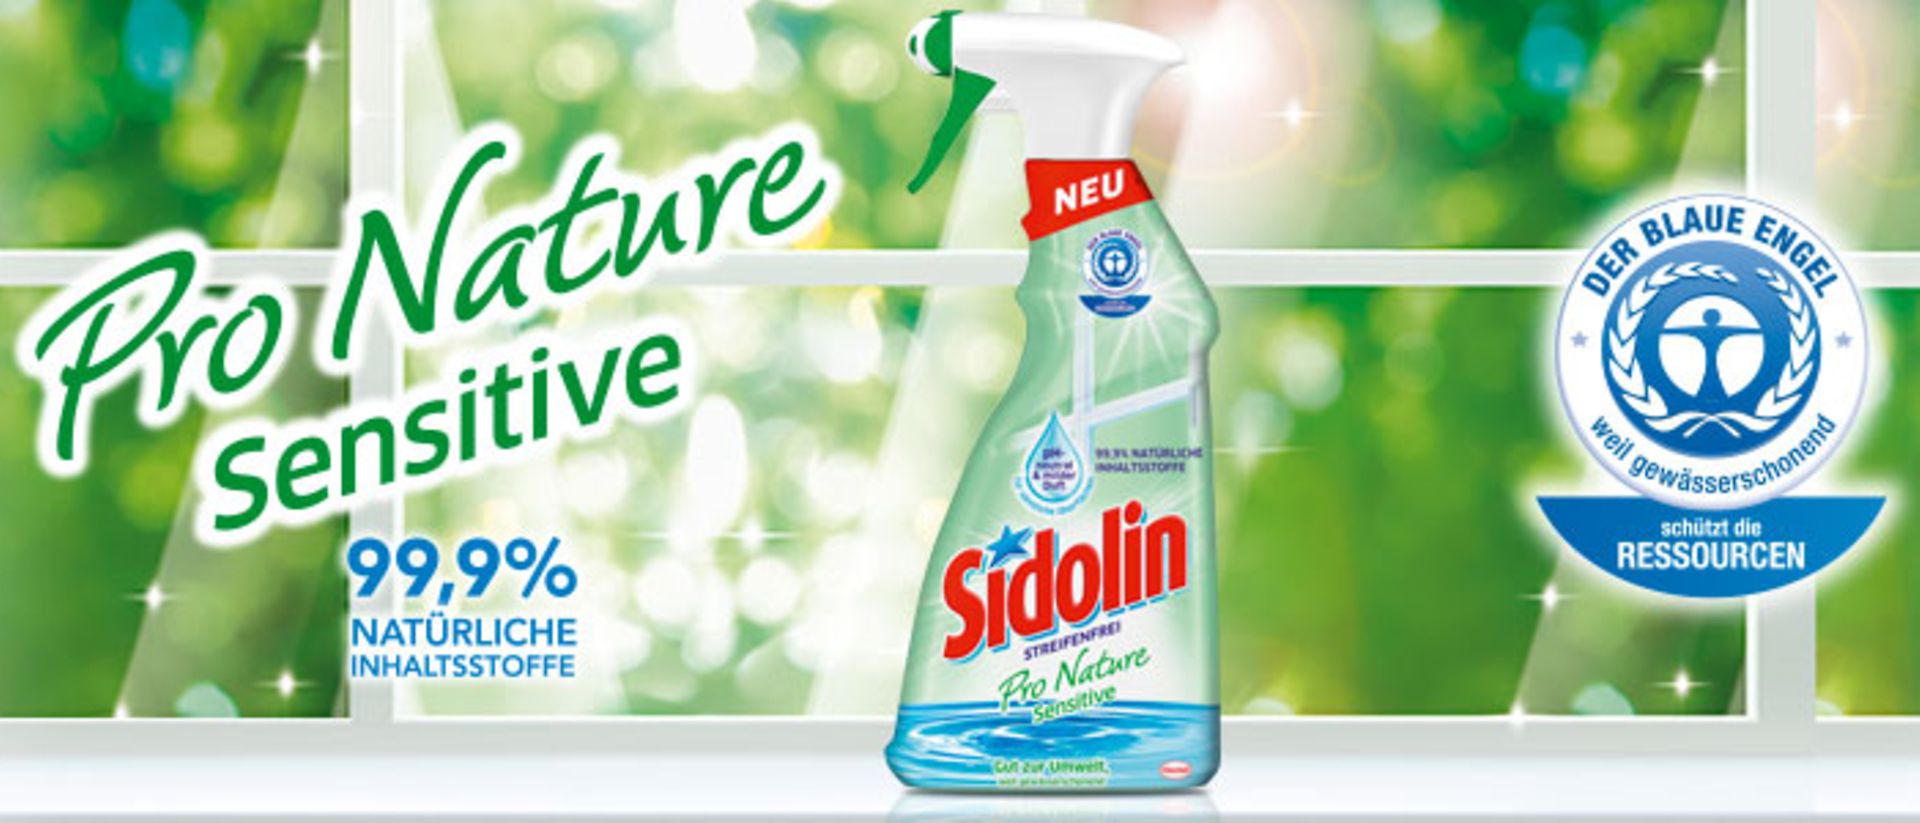 300 Produkttestern für das neue Sidolin Pro Nature Sensitive gesucht